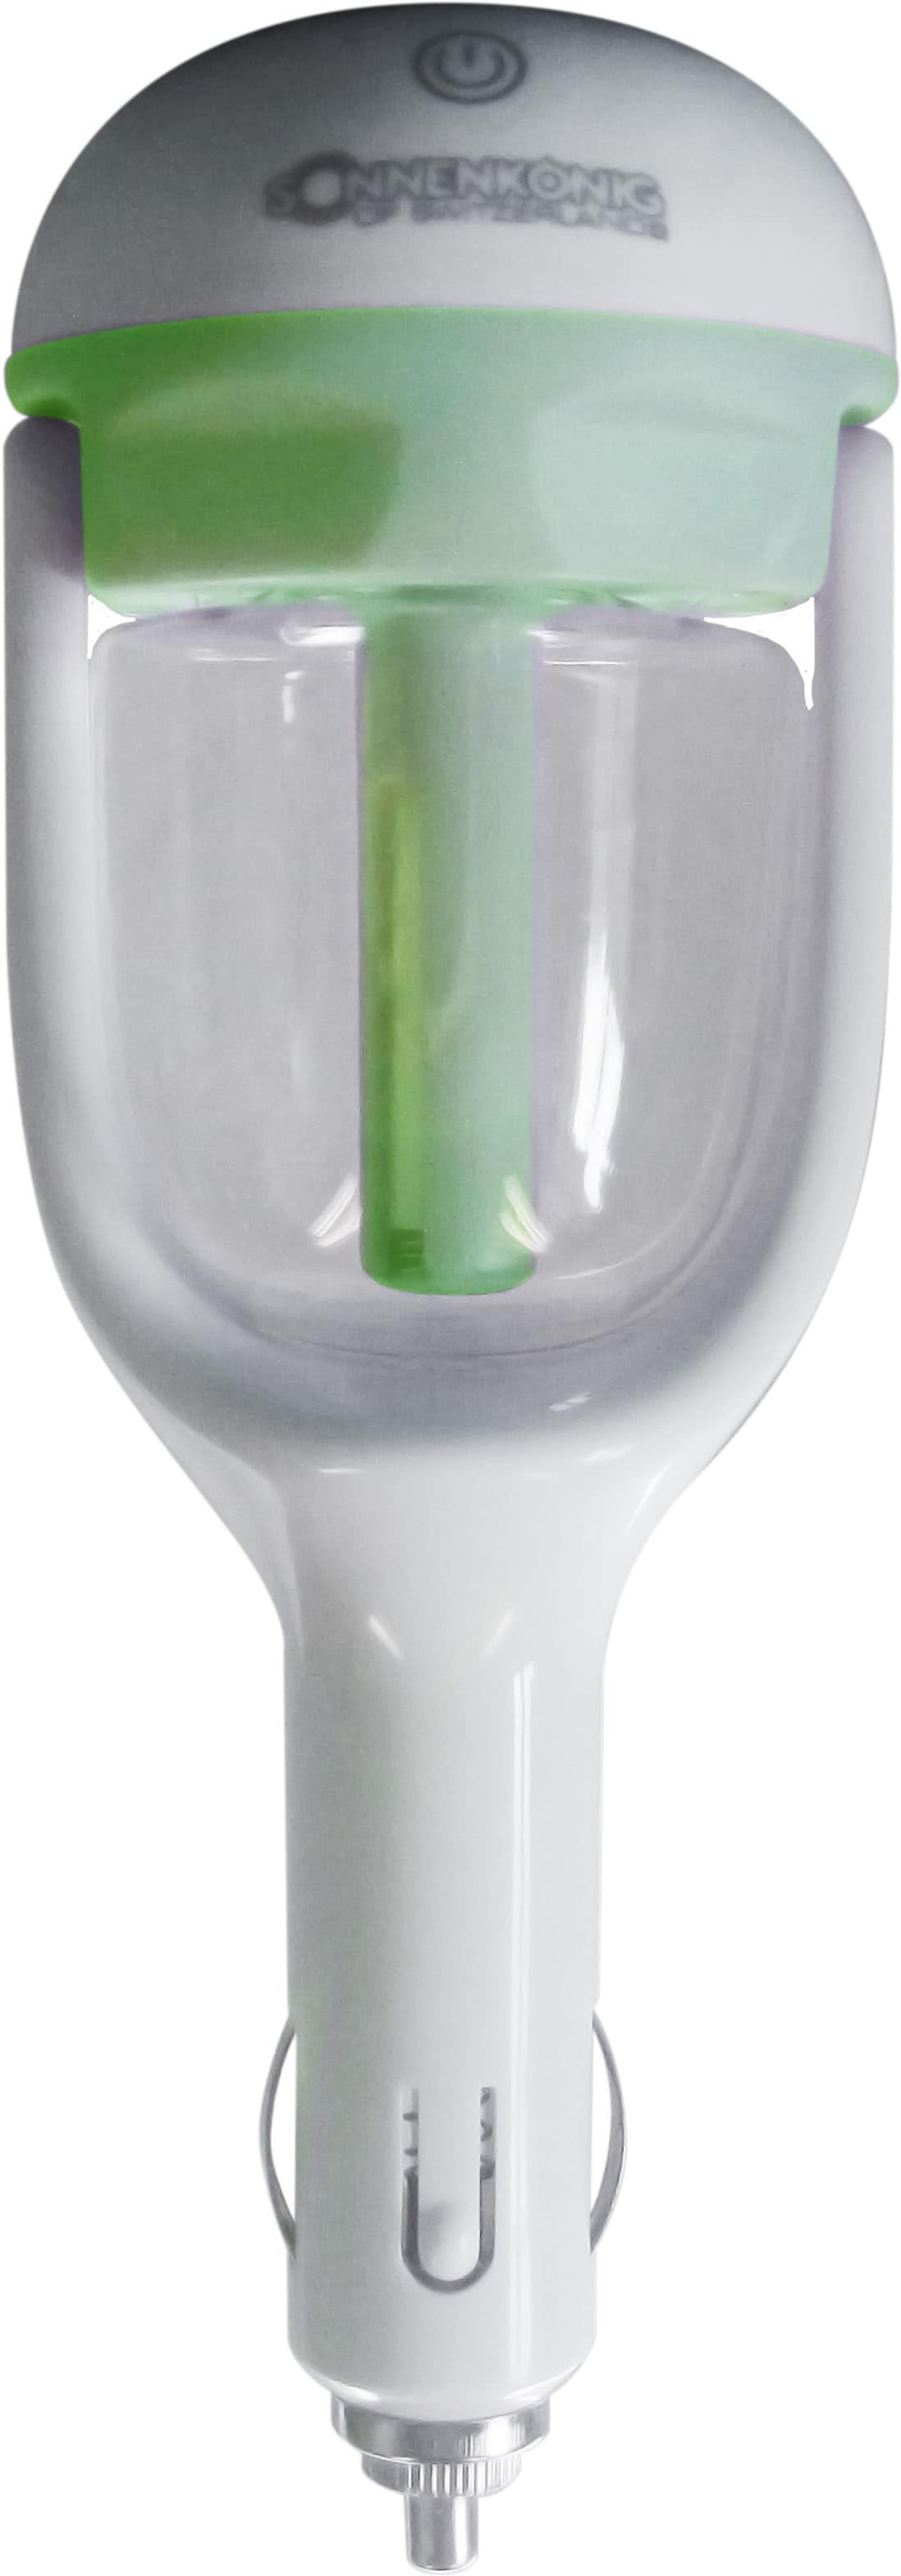 Sonnenkönig Luftbefeuchter "Freshcar grün", 0,05 l Wassertank